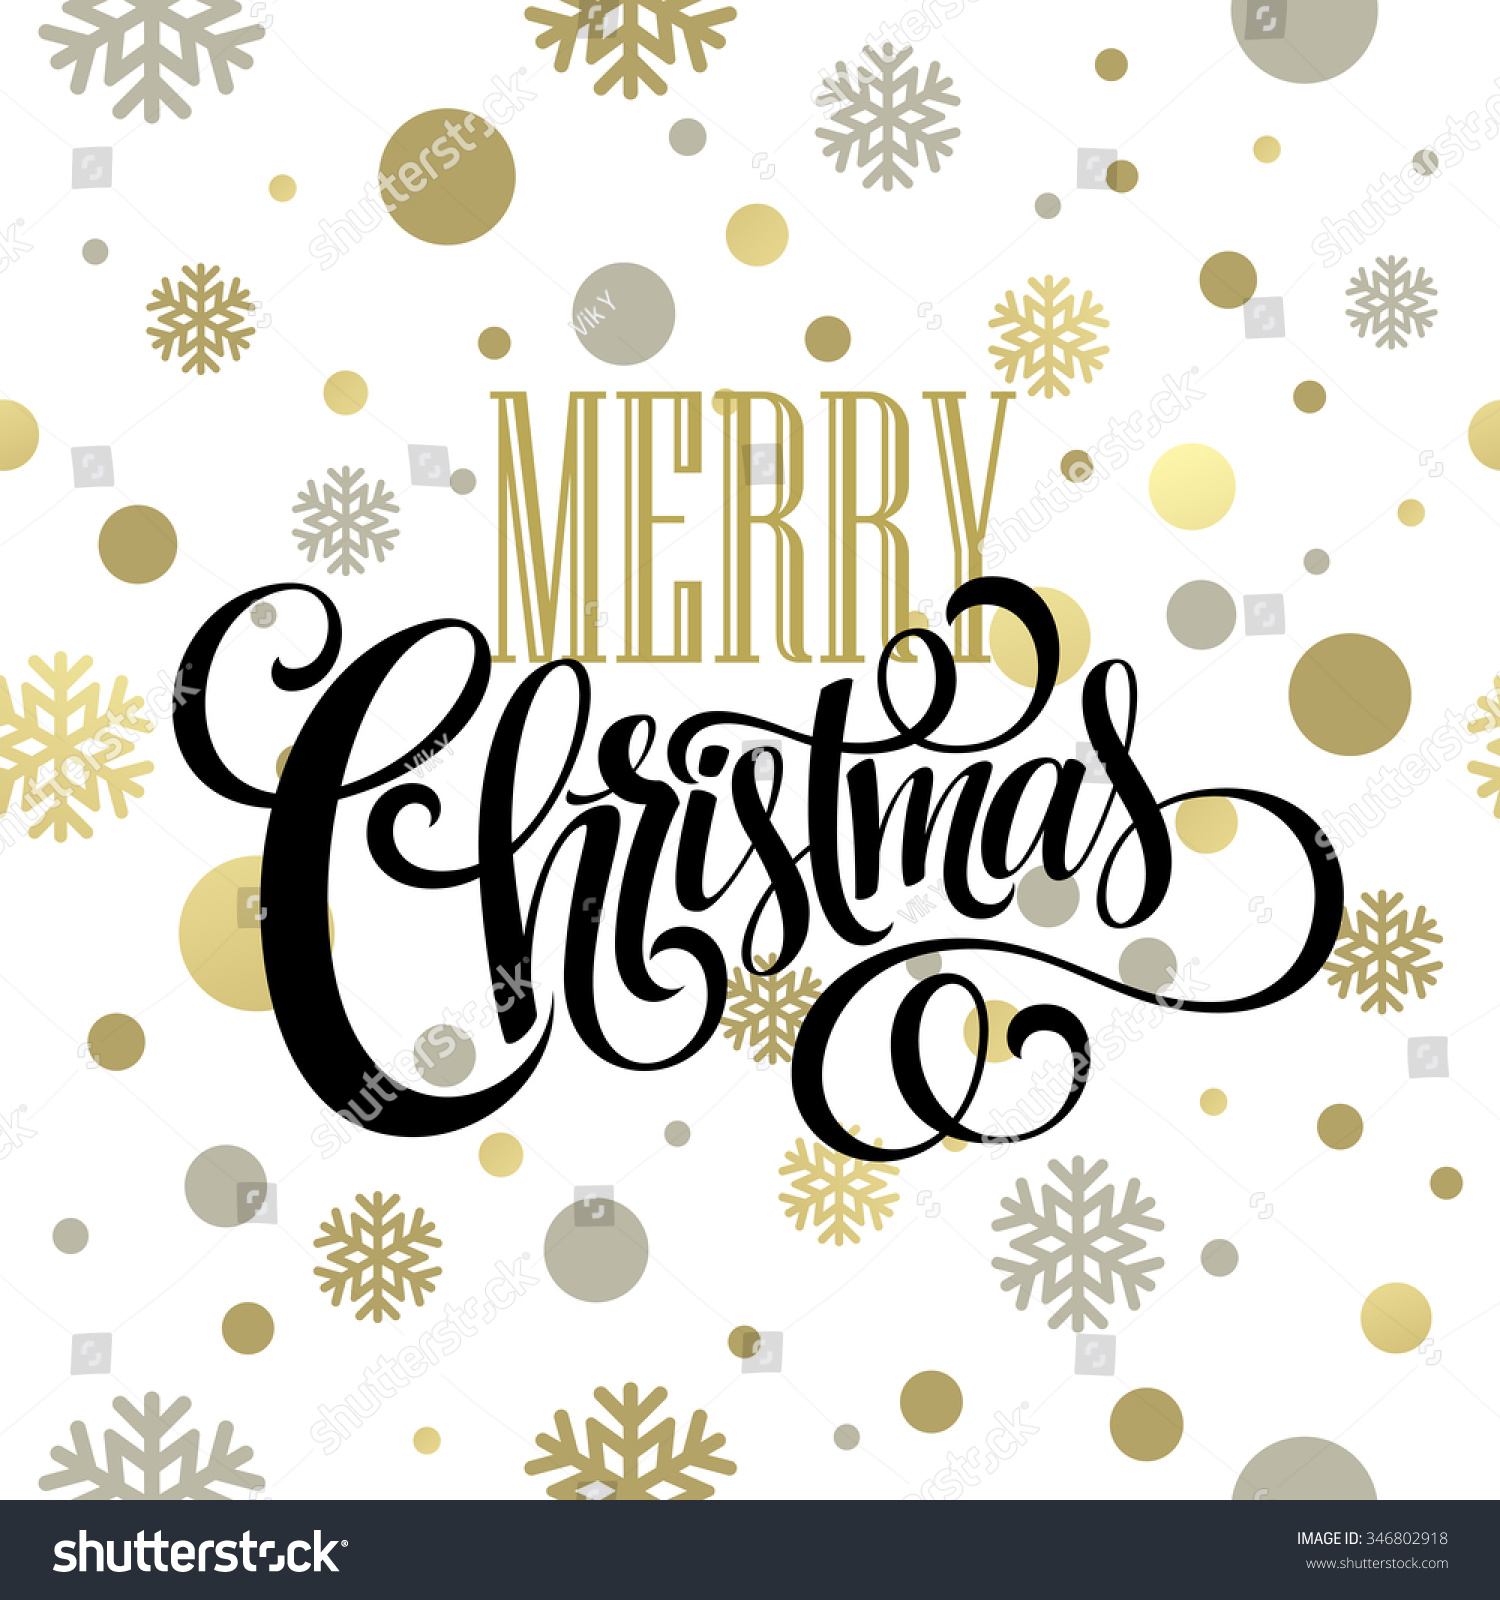 Merry Christmas Gold Glittering Lettering Design Stock Illustration ...